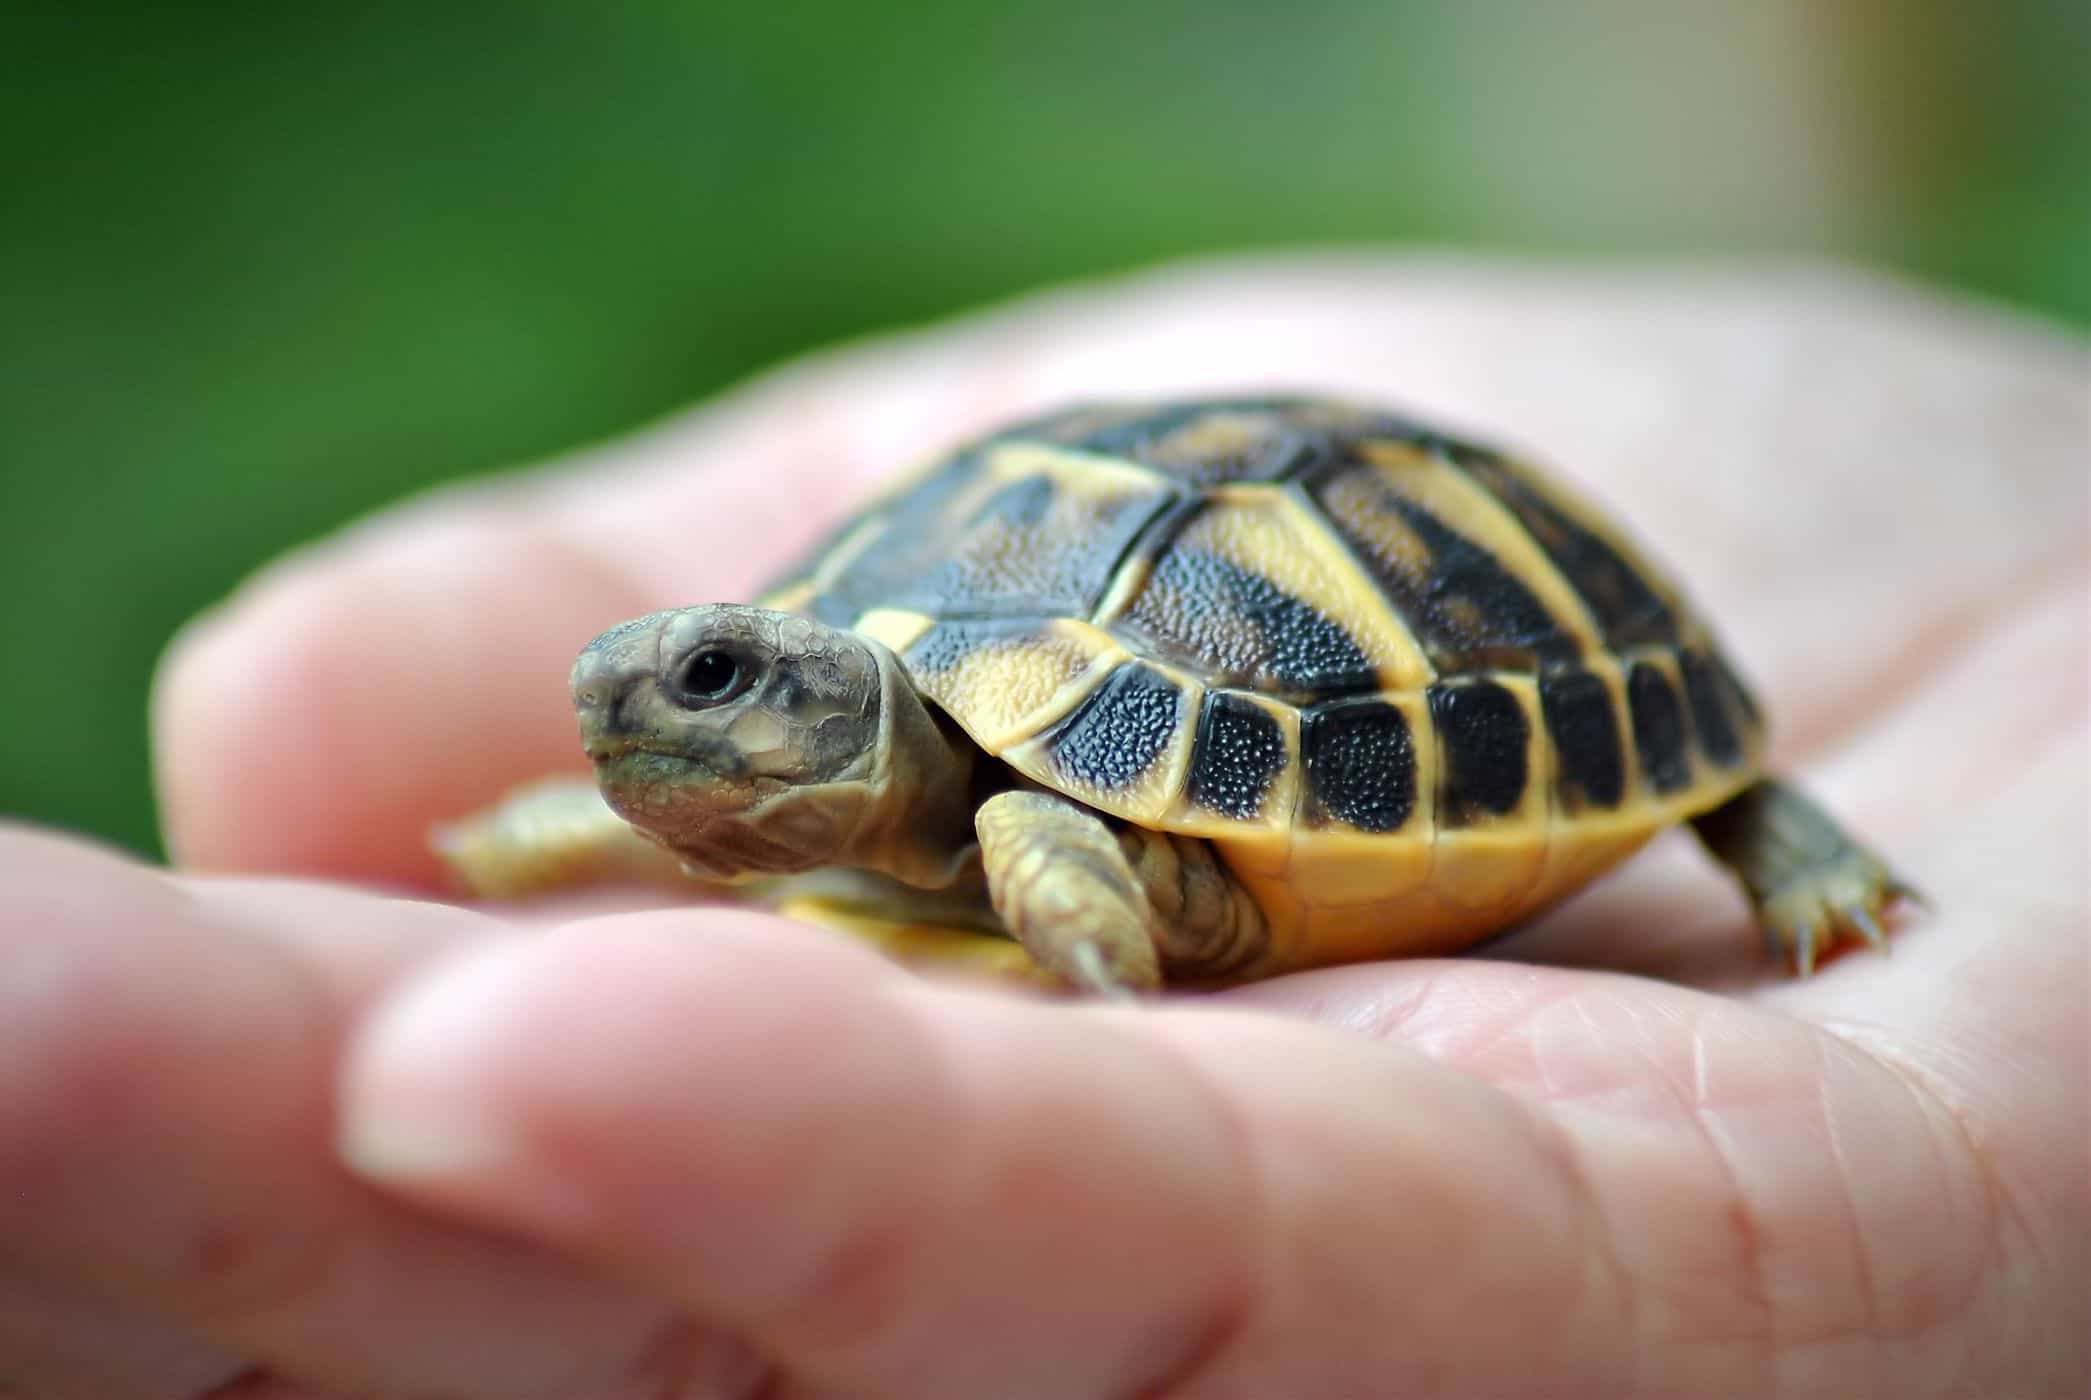 vedligeholdelse af skildpadder øger risikoen for salmonella infektion